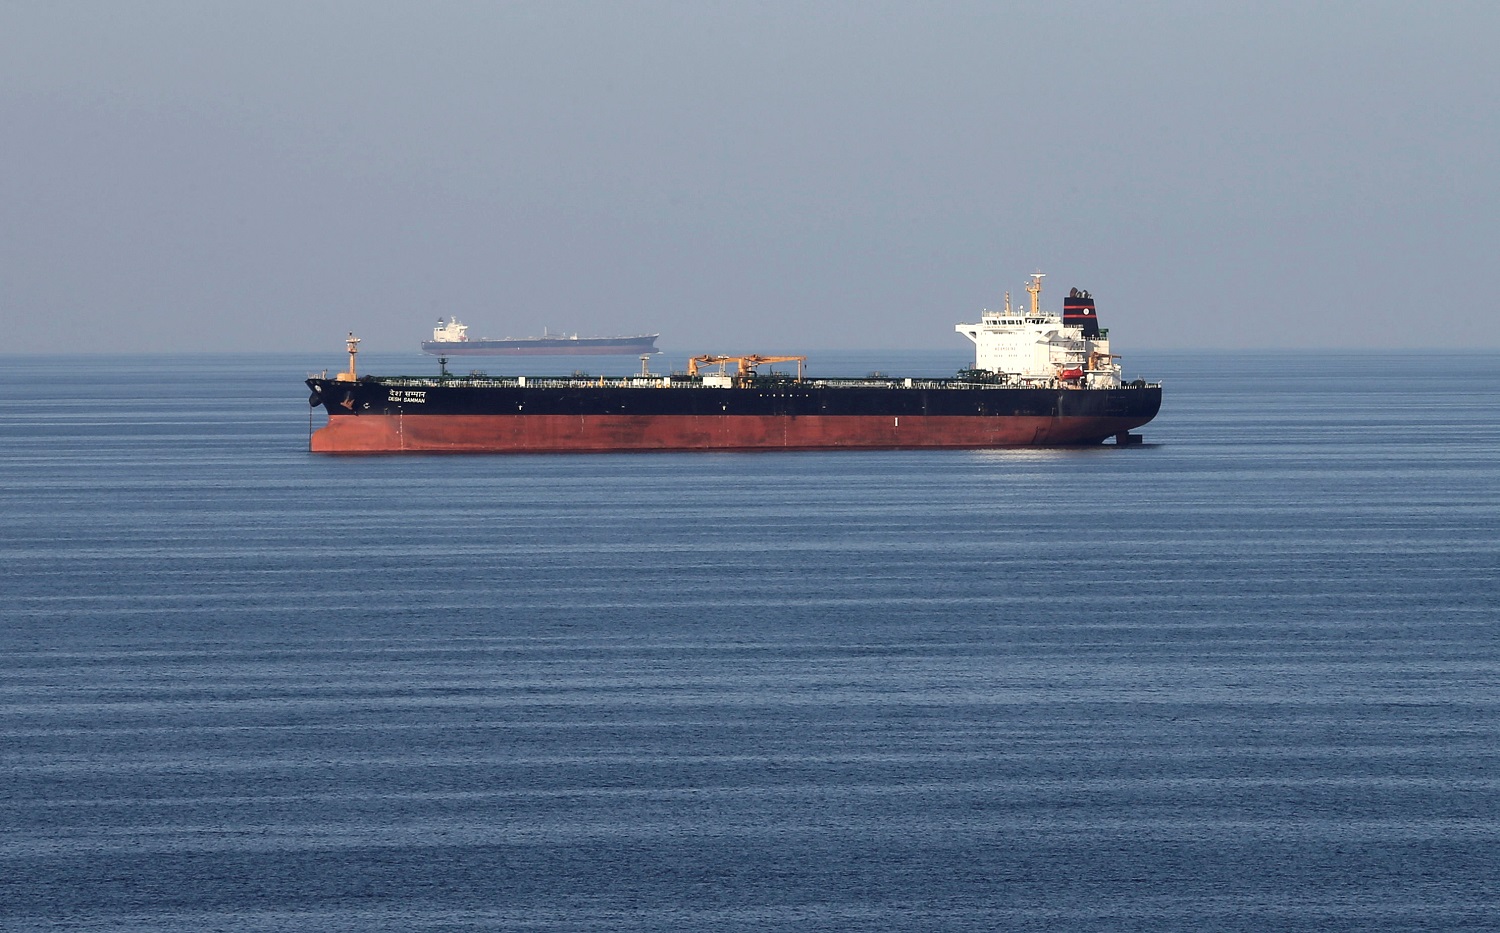 تتمركز وحدة تسونجيه في خليج عدن منذ عام 2009 للمساعدة في التصدي للقرصنة بالشراكة مع دول إفريقية والولايات المتحدة والاتحاد الأوروبي. رويترز